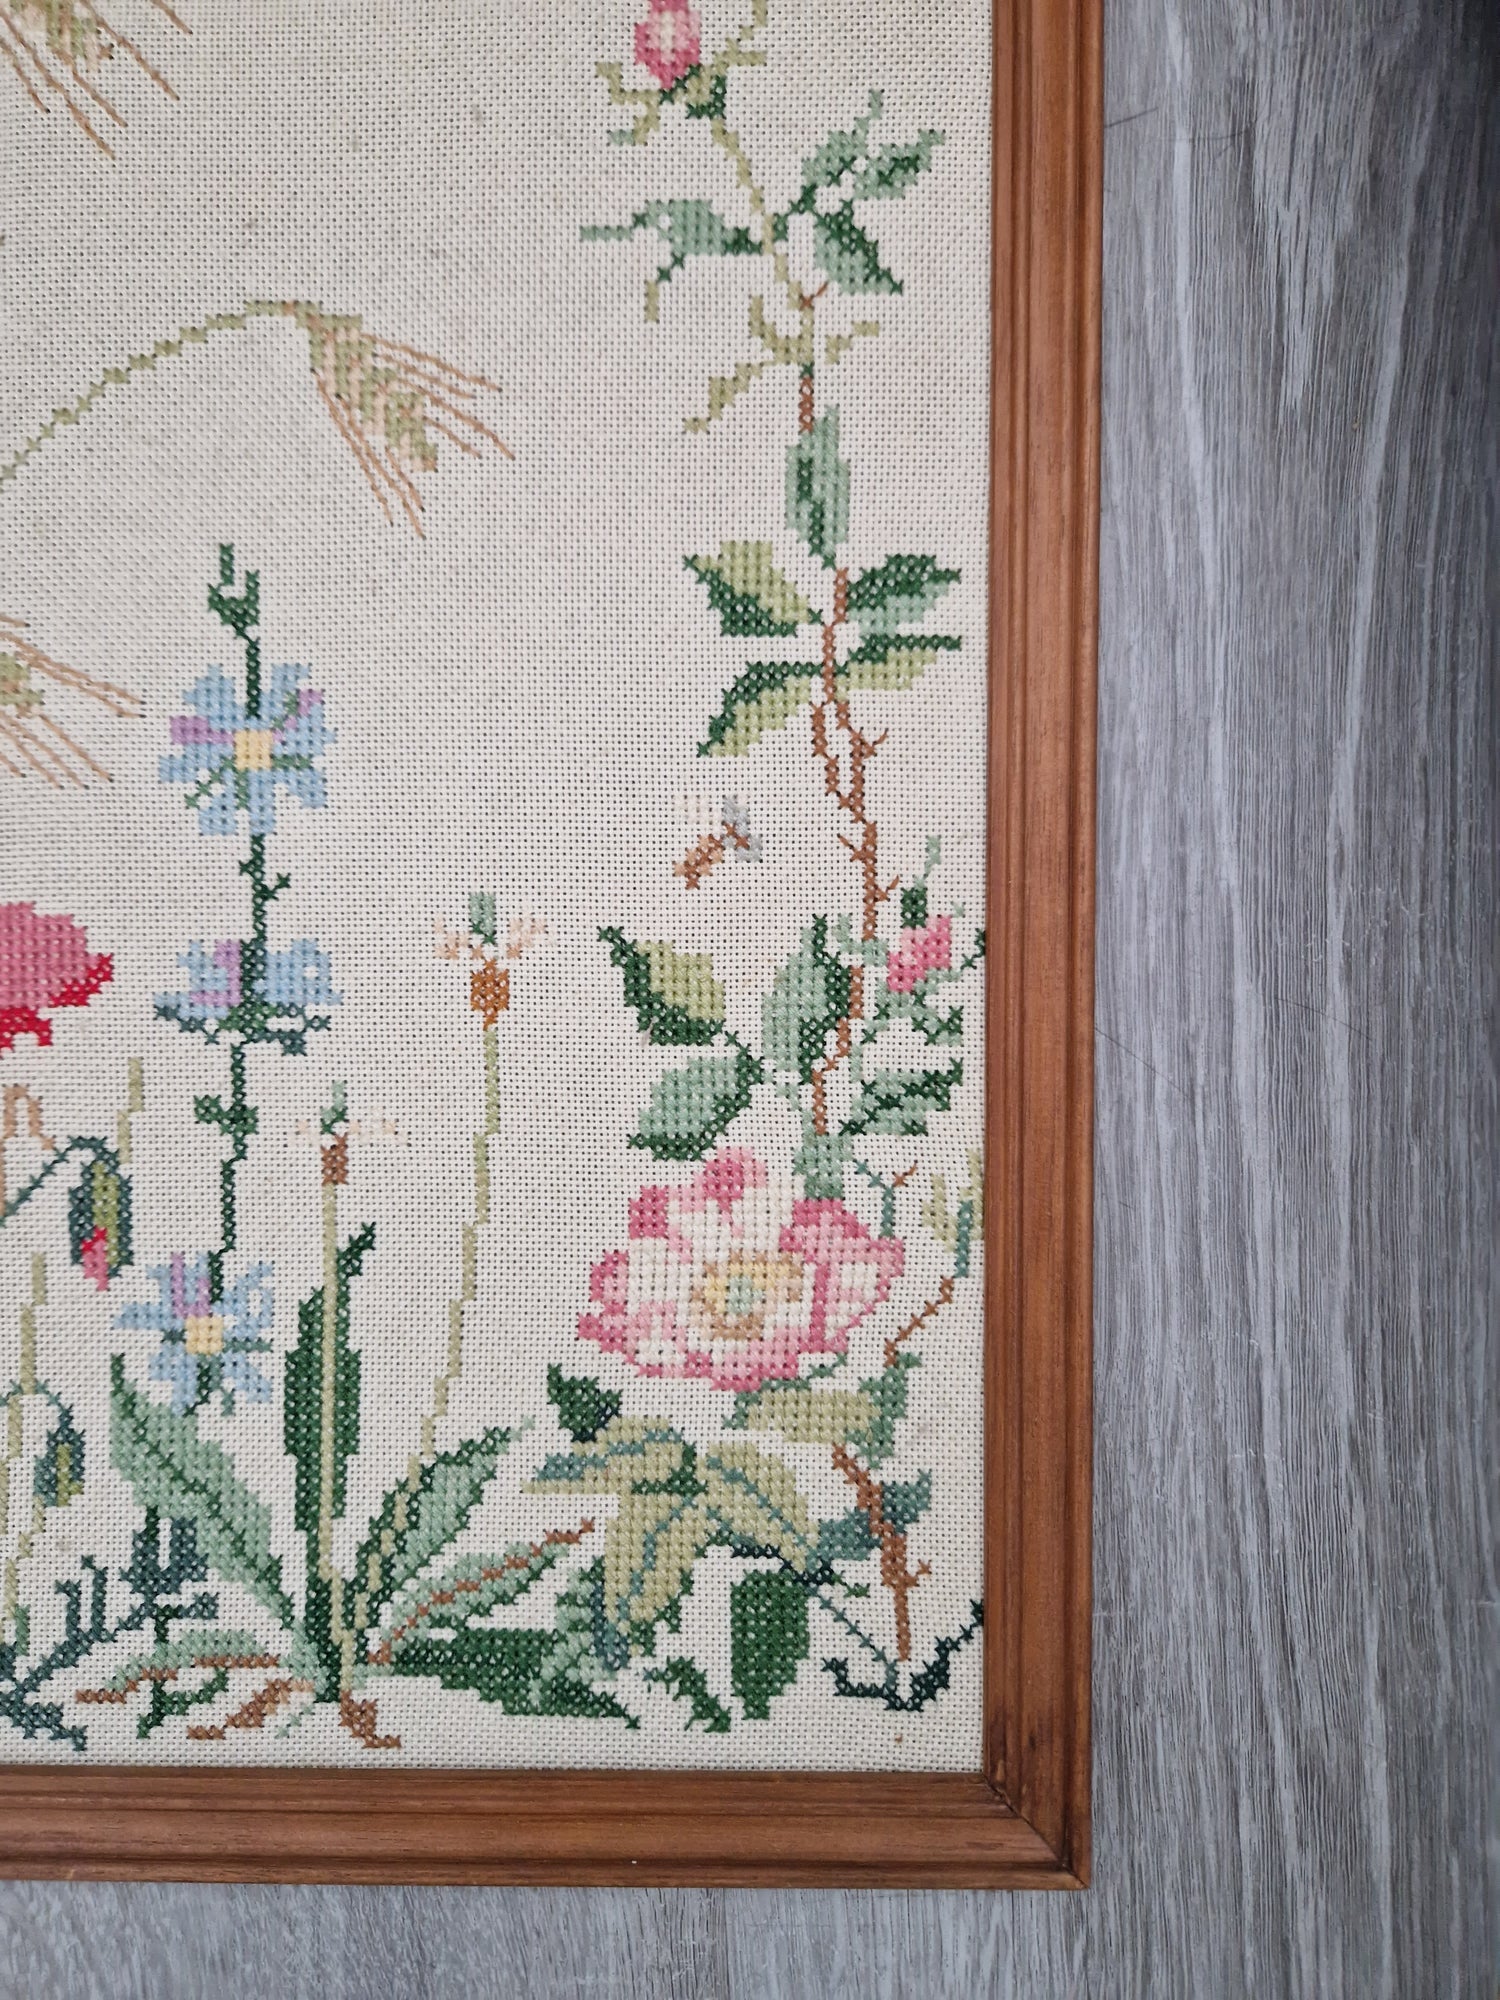 Ingelijst borduurwerk bloemen